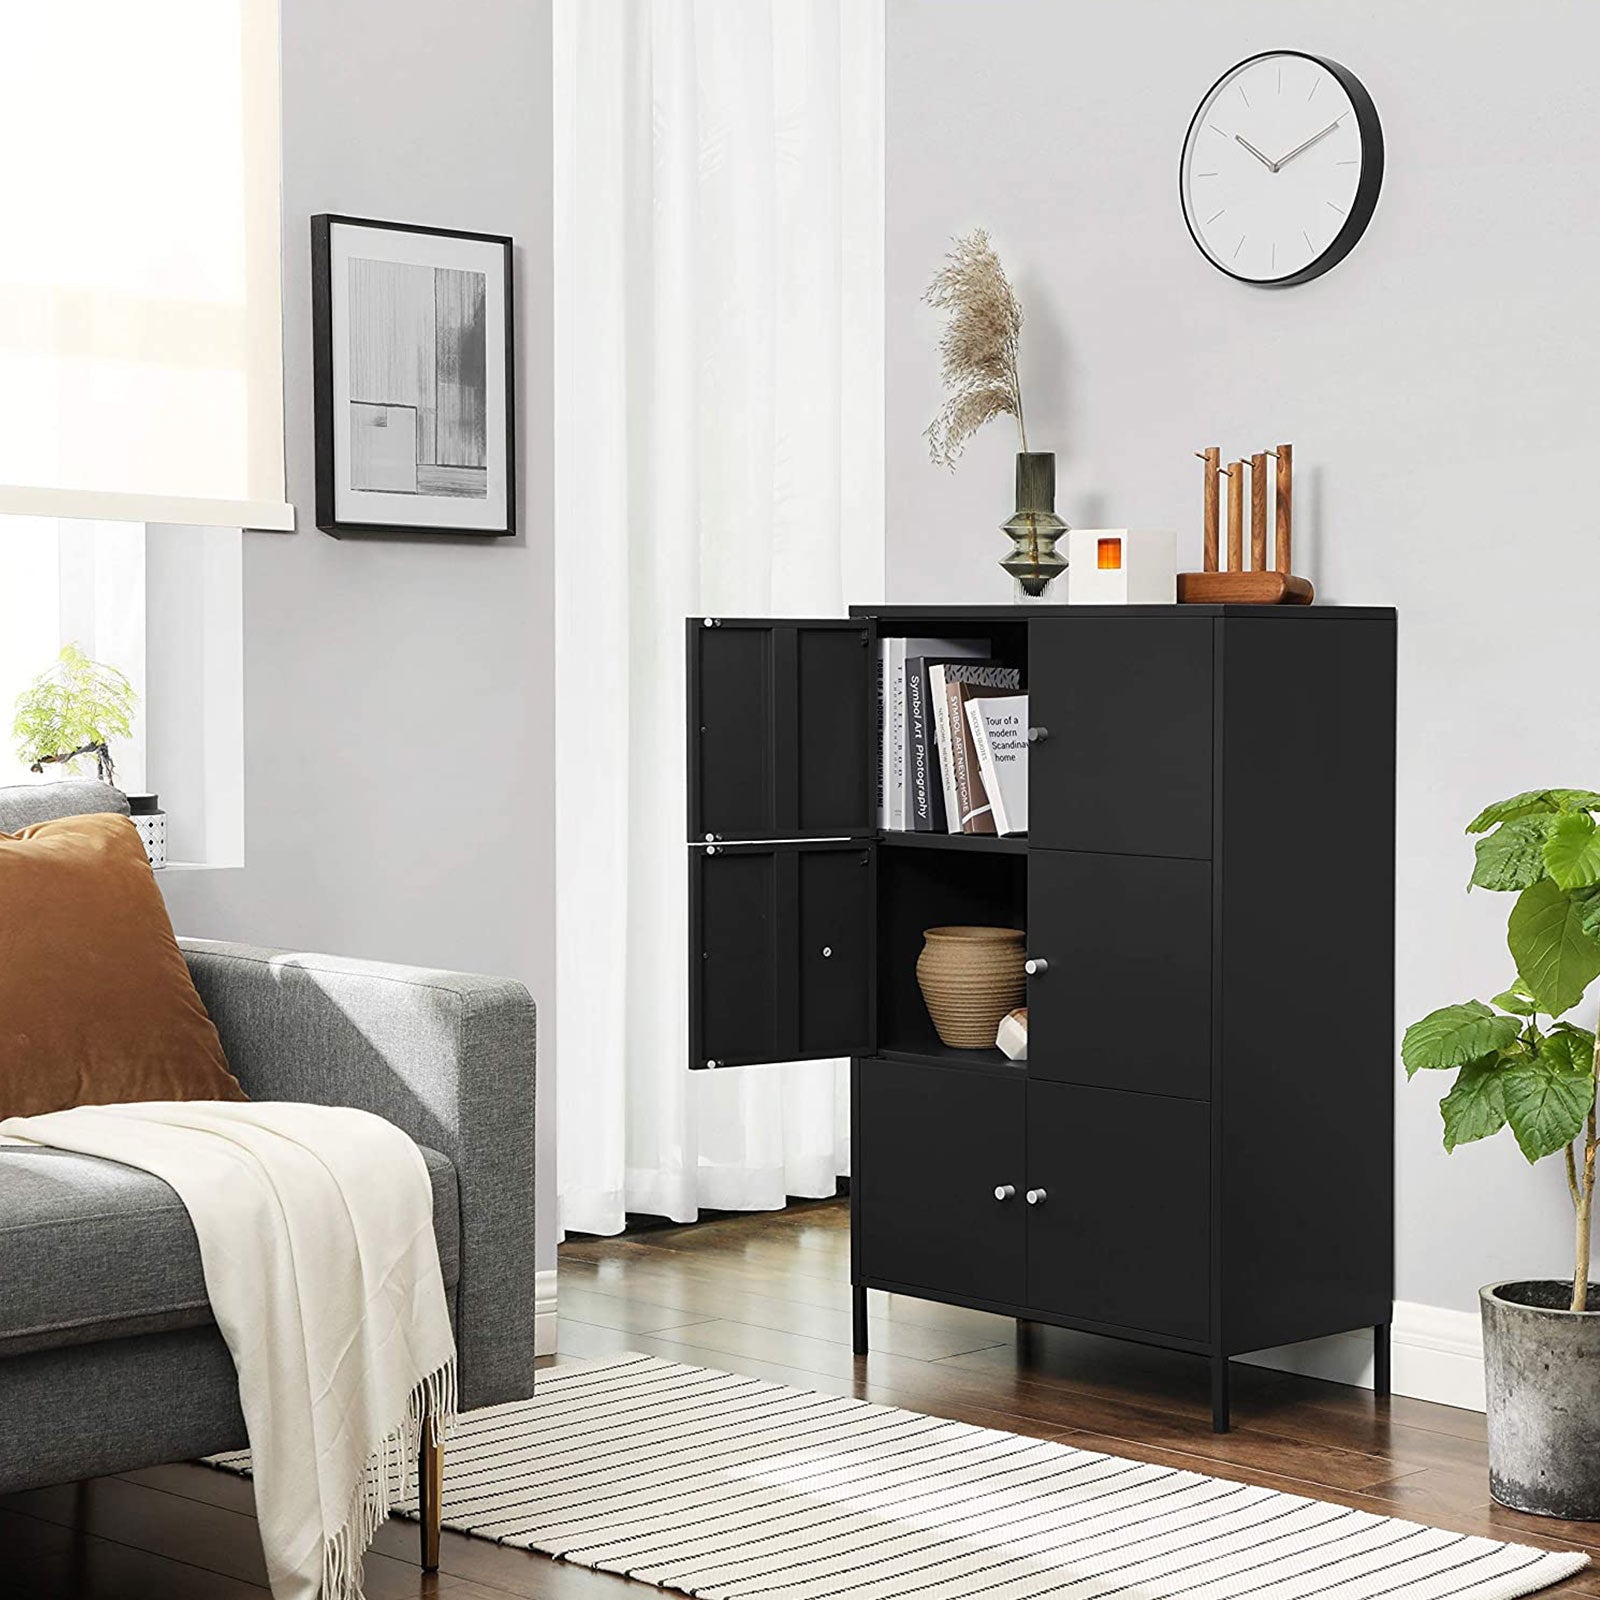 Black Steel Free Standing Storage Cabinet - HWLEXTRA